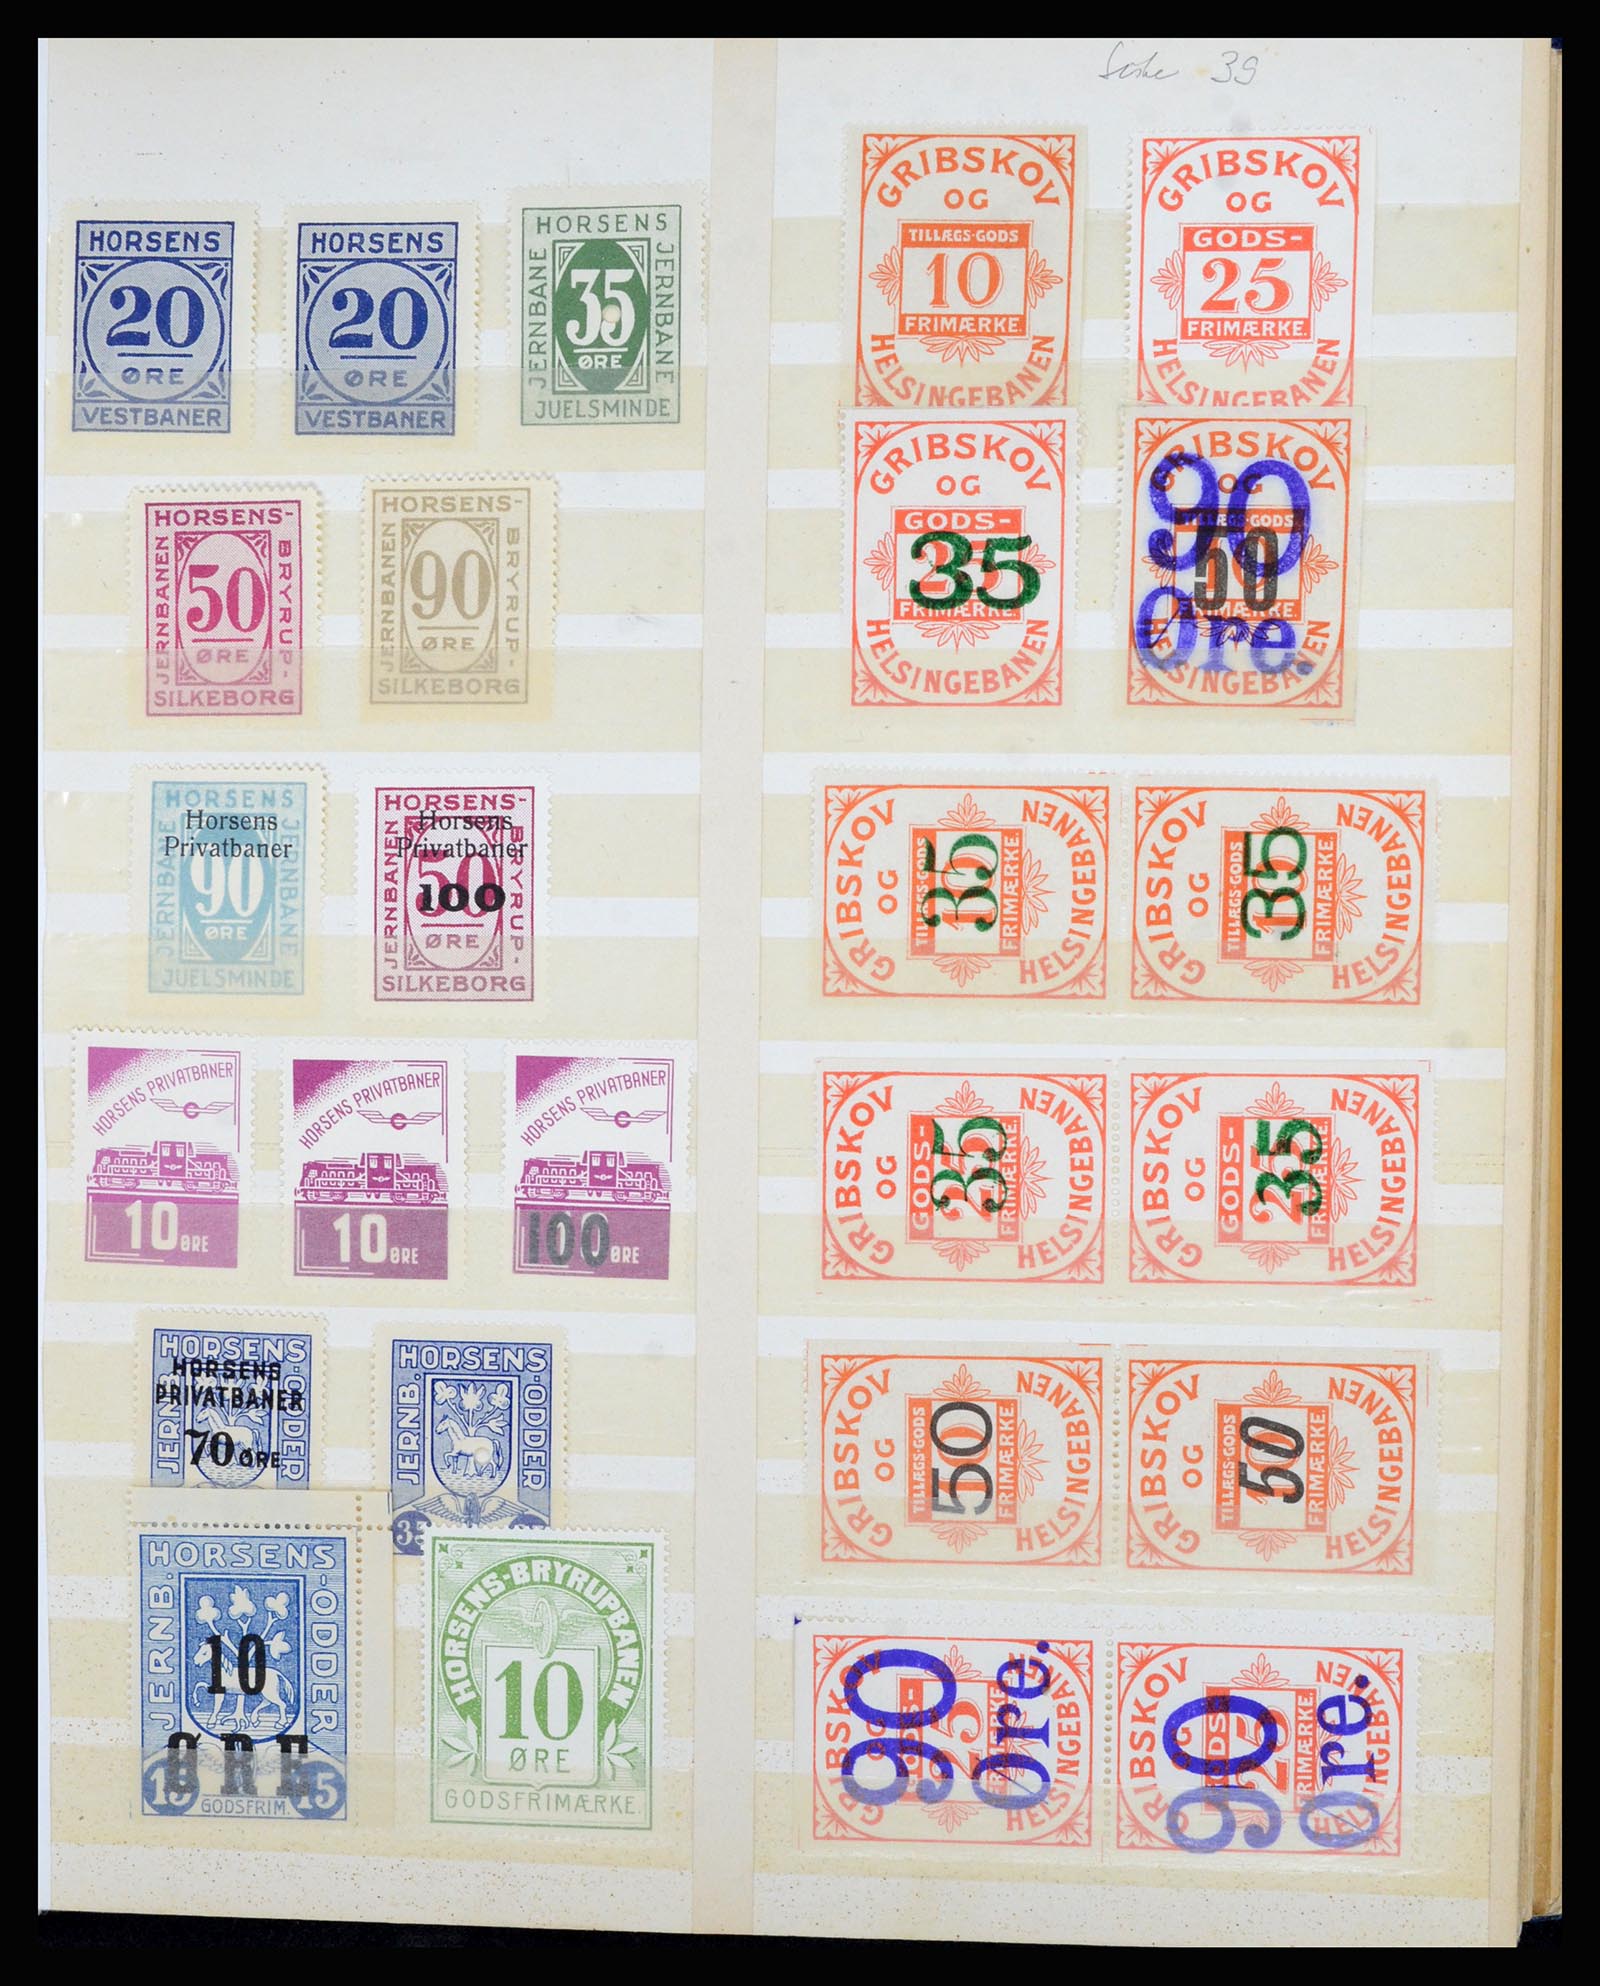 36767 009 - Postzegelverzameling 36767 Denemarken spoorwegzegels.